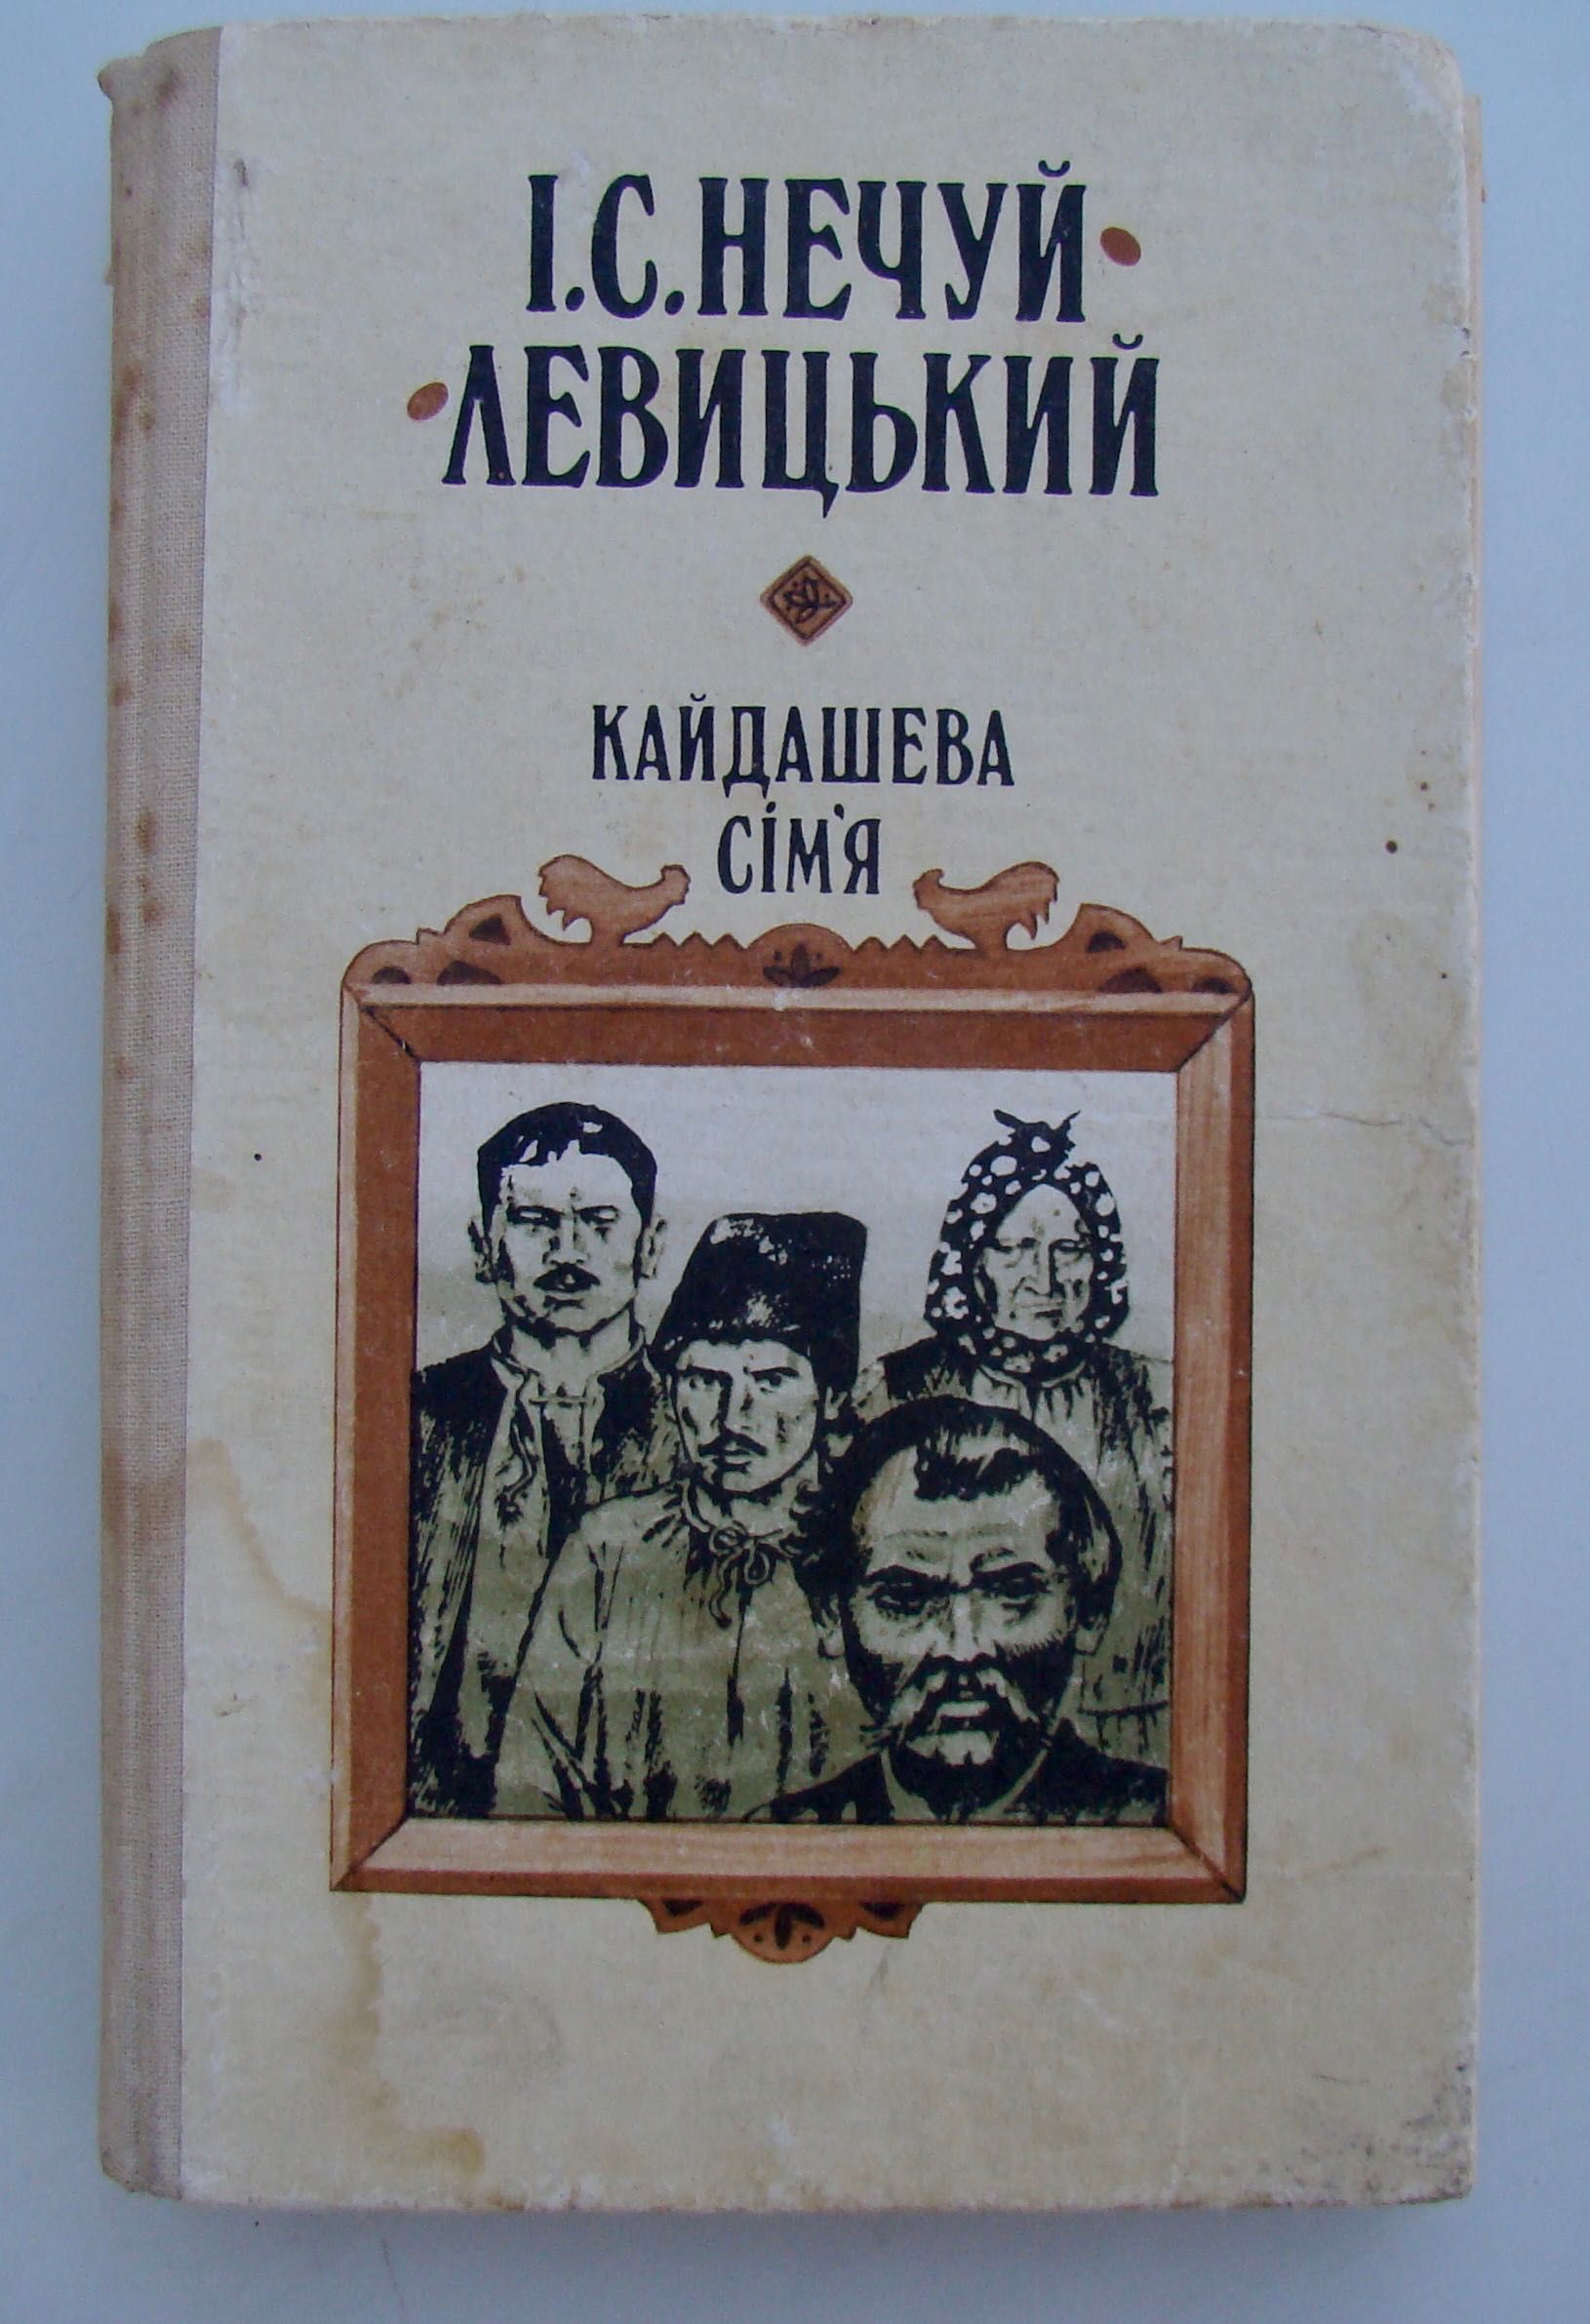 Українська художня література, книги для учнів, книги укр.поетів